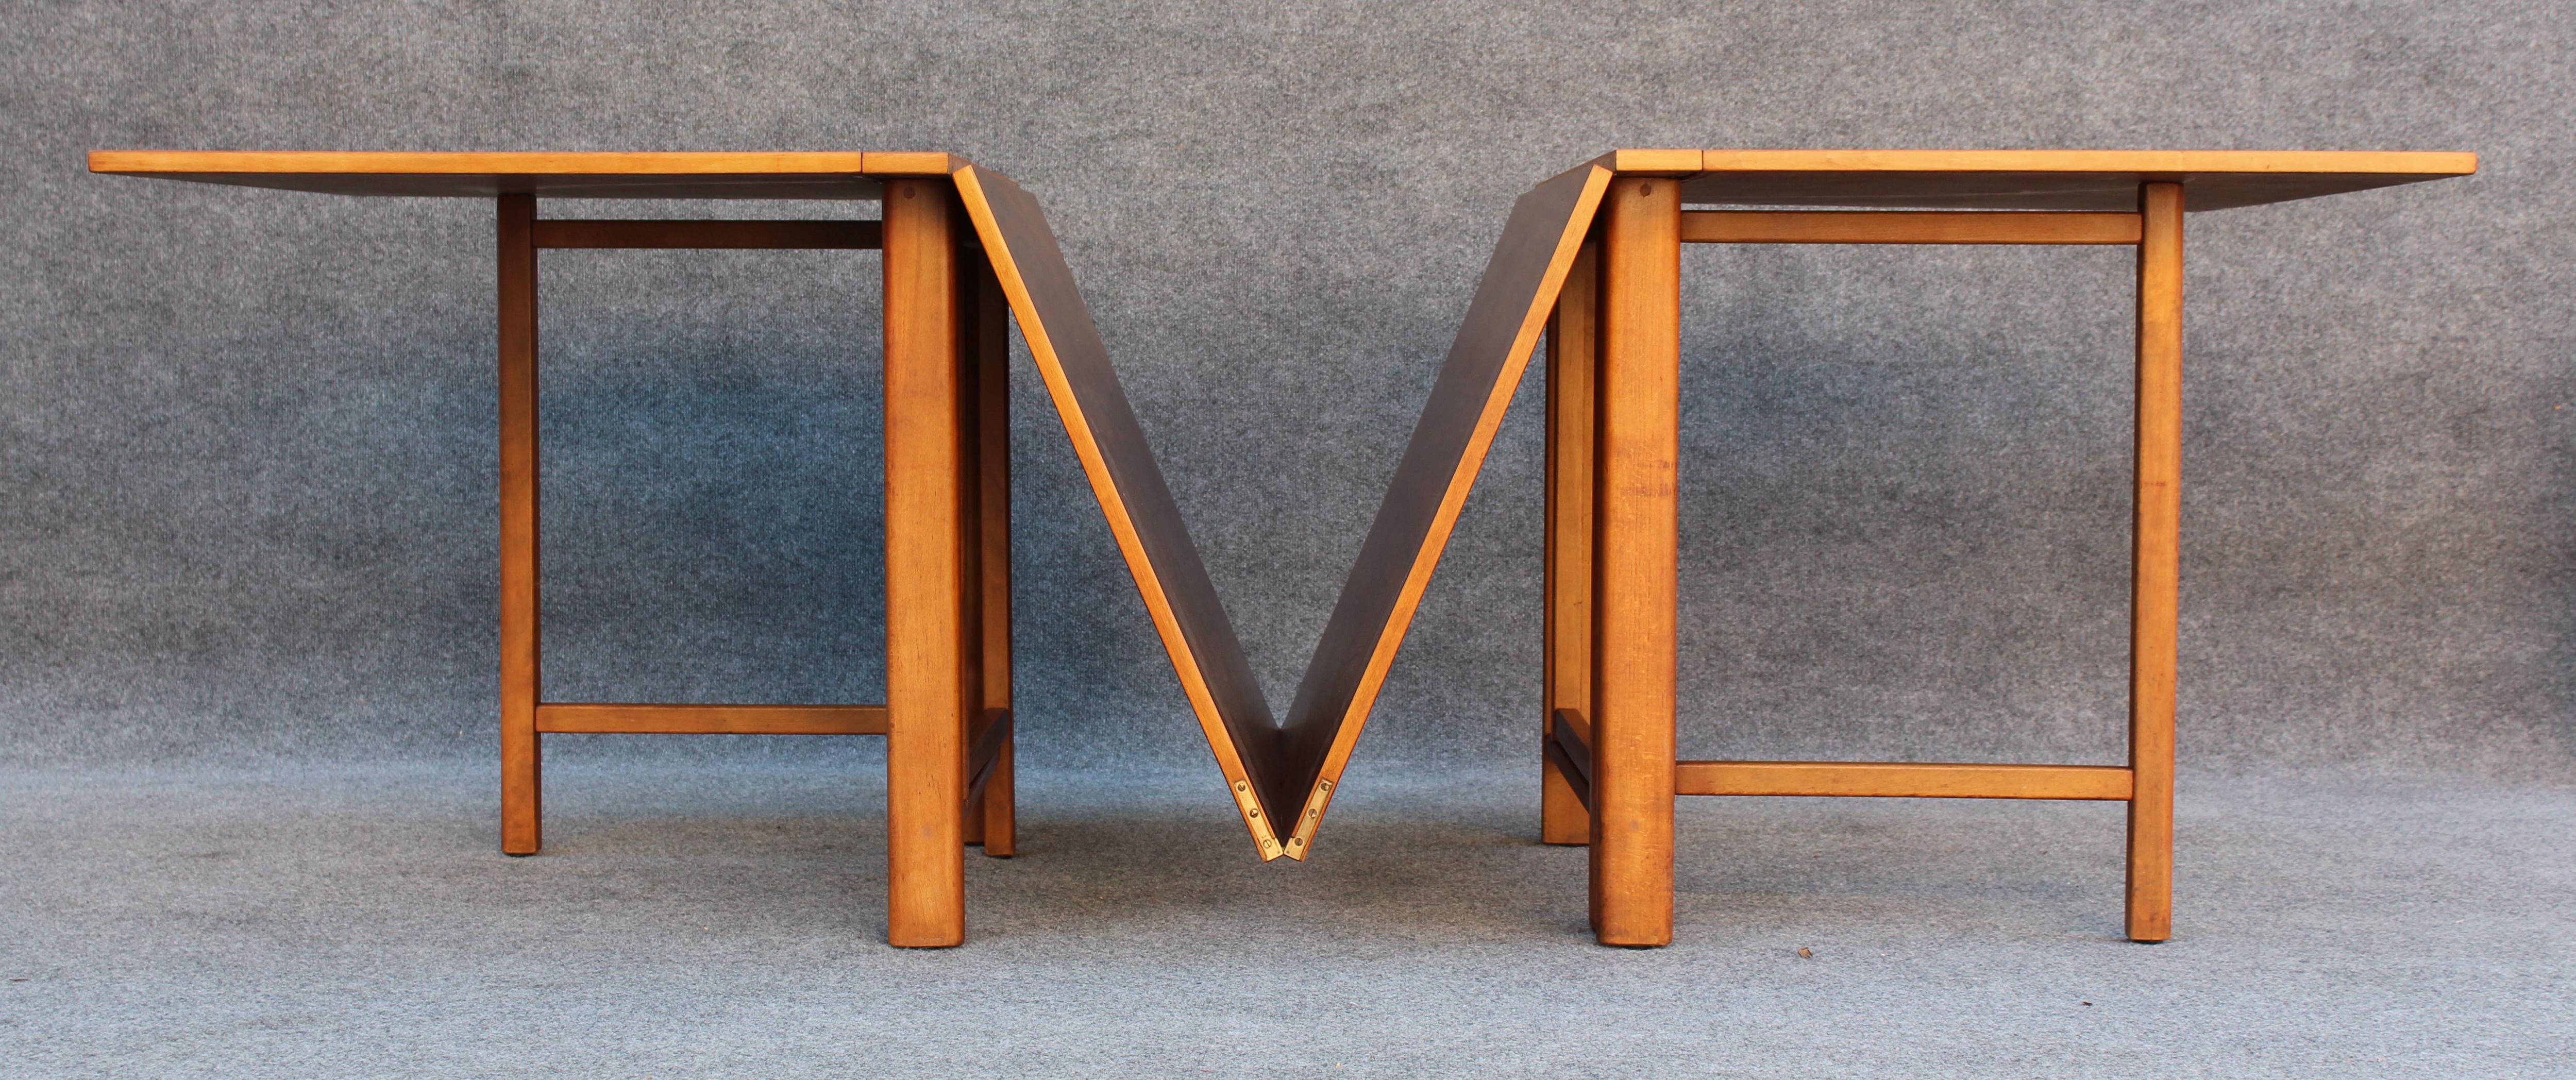 Cette table fantastique a été conçue par l'icône du design Bruno Icone pour sa société de fabrication Mathsson International. D'une longueur de plus de 11 pieds, son sommet est composé de sept pièces de noyer, toutes joliment assorties. Relié par